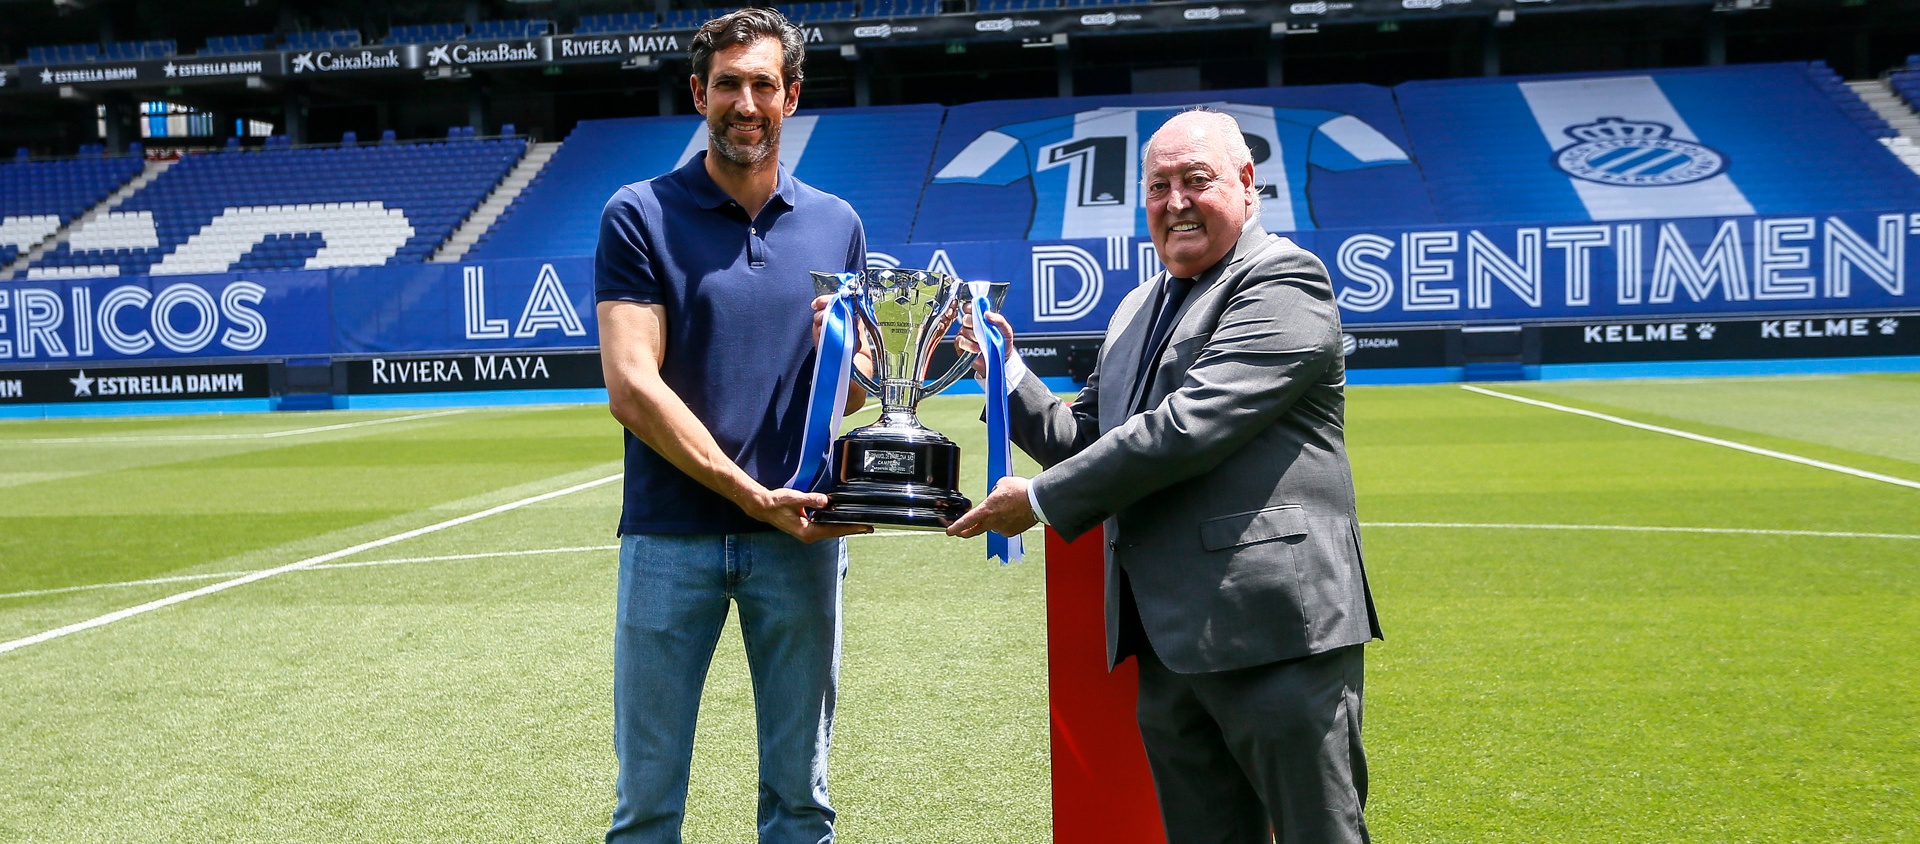 El president de l’FCF entrega el trofeu de campions de lliga al RCD Espanyol